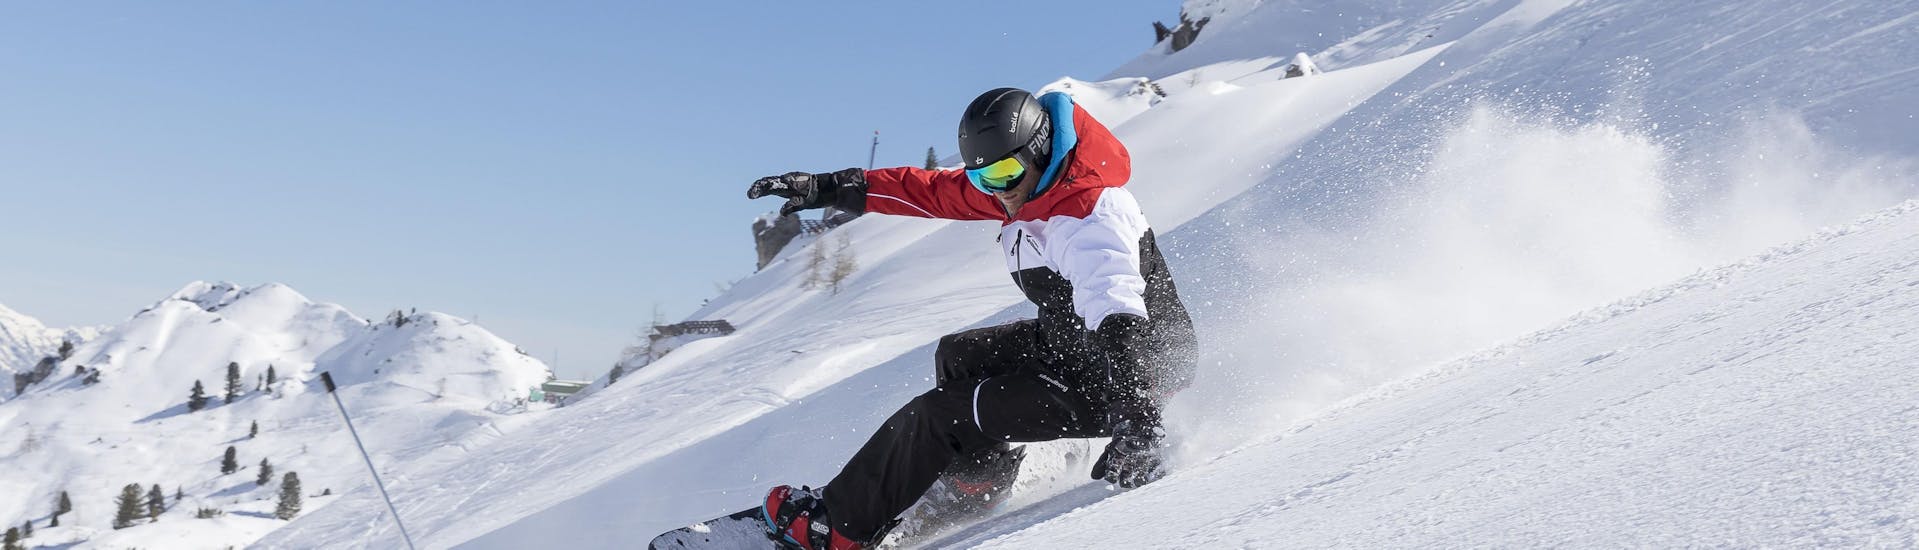 Cours de snowboard (dès 8 ans) pour Snowboardeurs expérimentés.